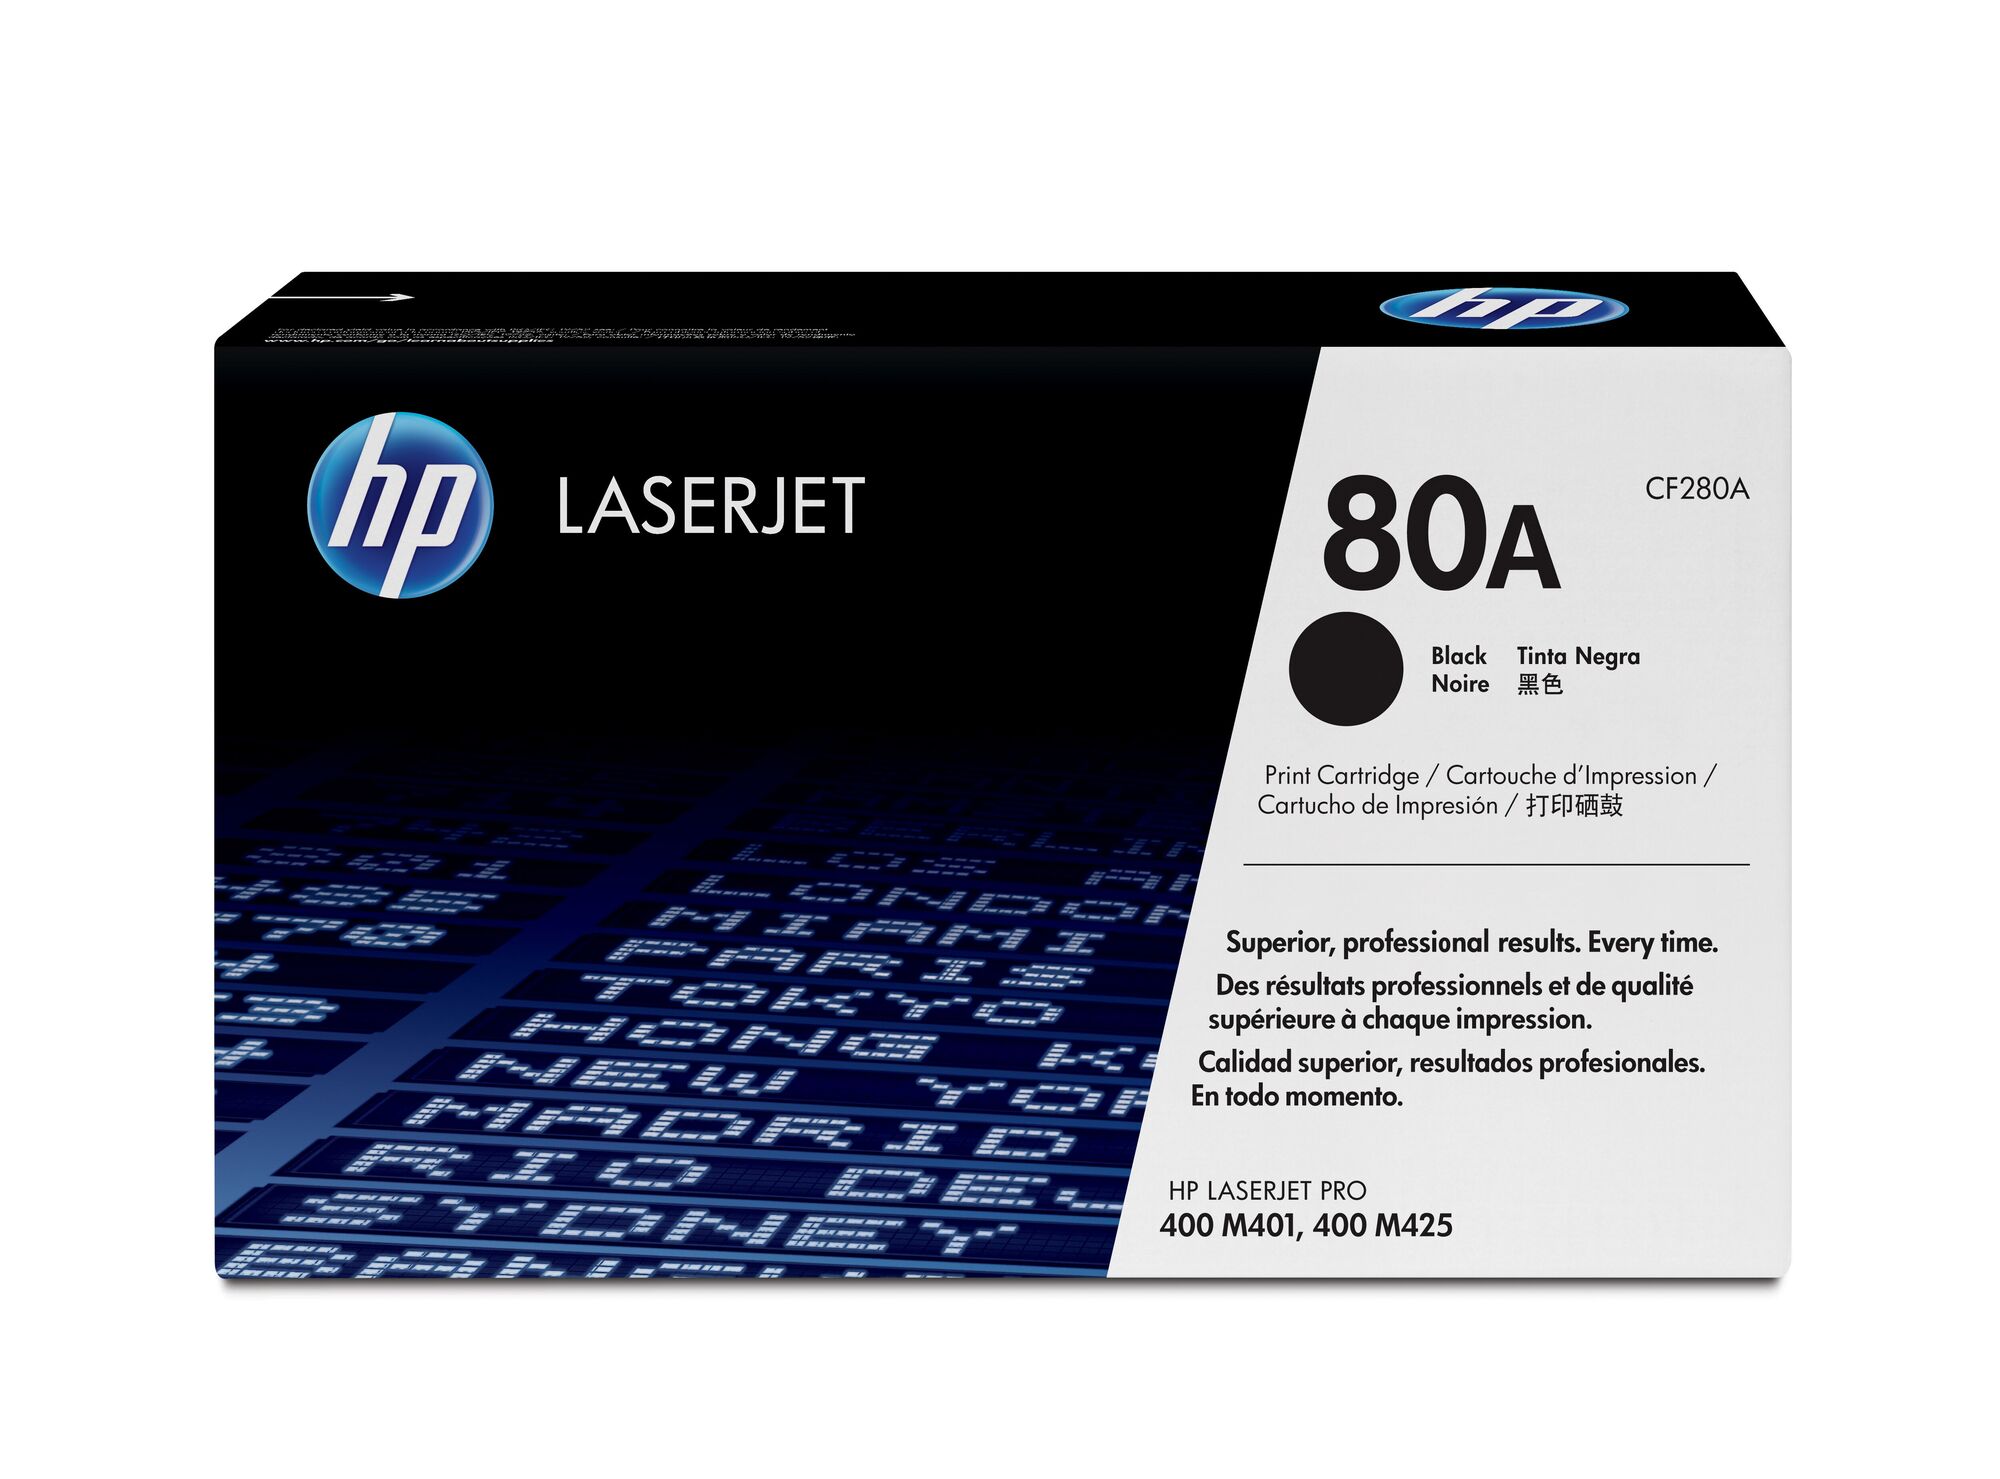 Картридж для печати HP Картридж HP 80A CF280A вид печати лазерный, цвет Черный, емкость